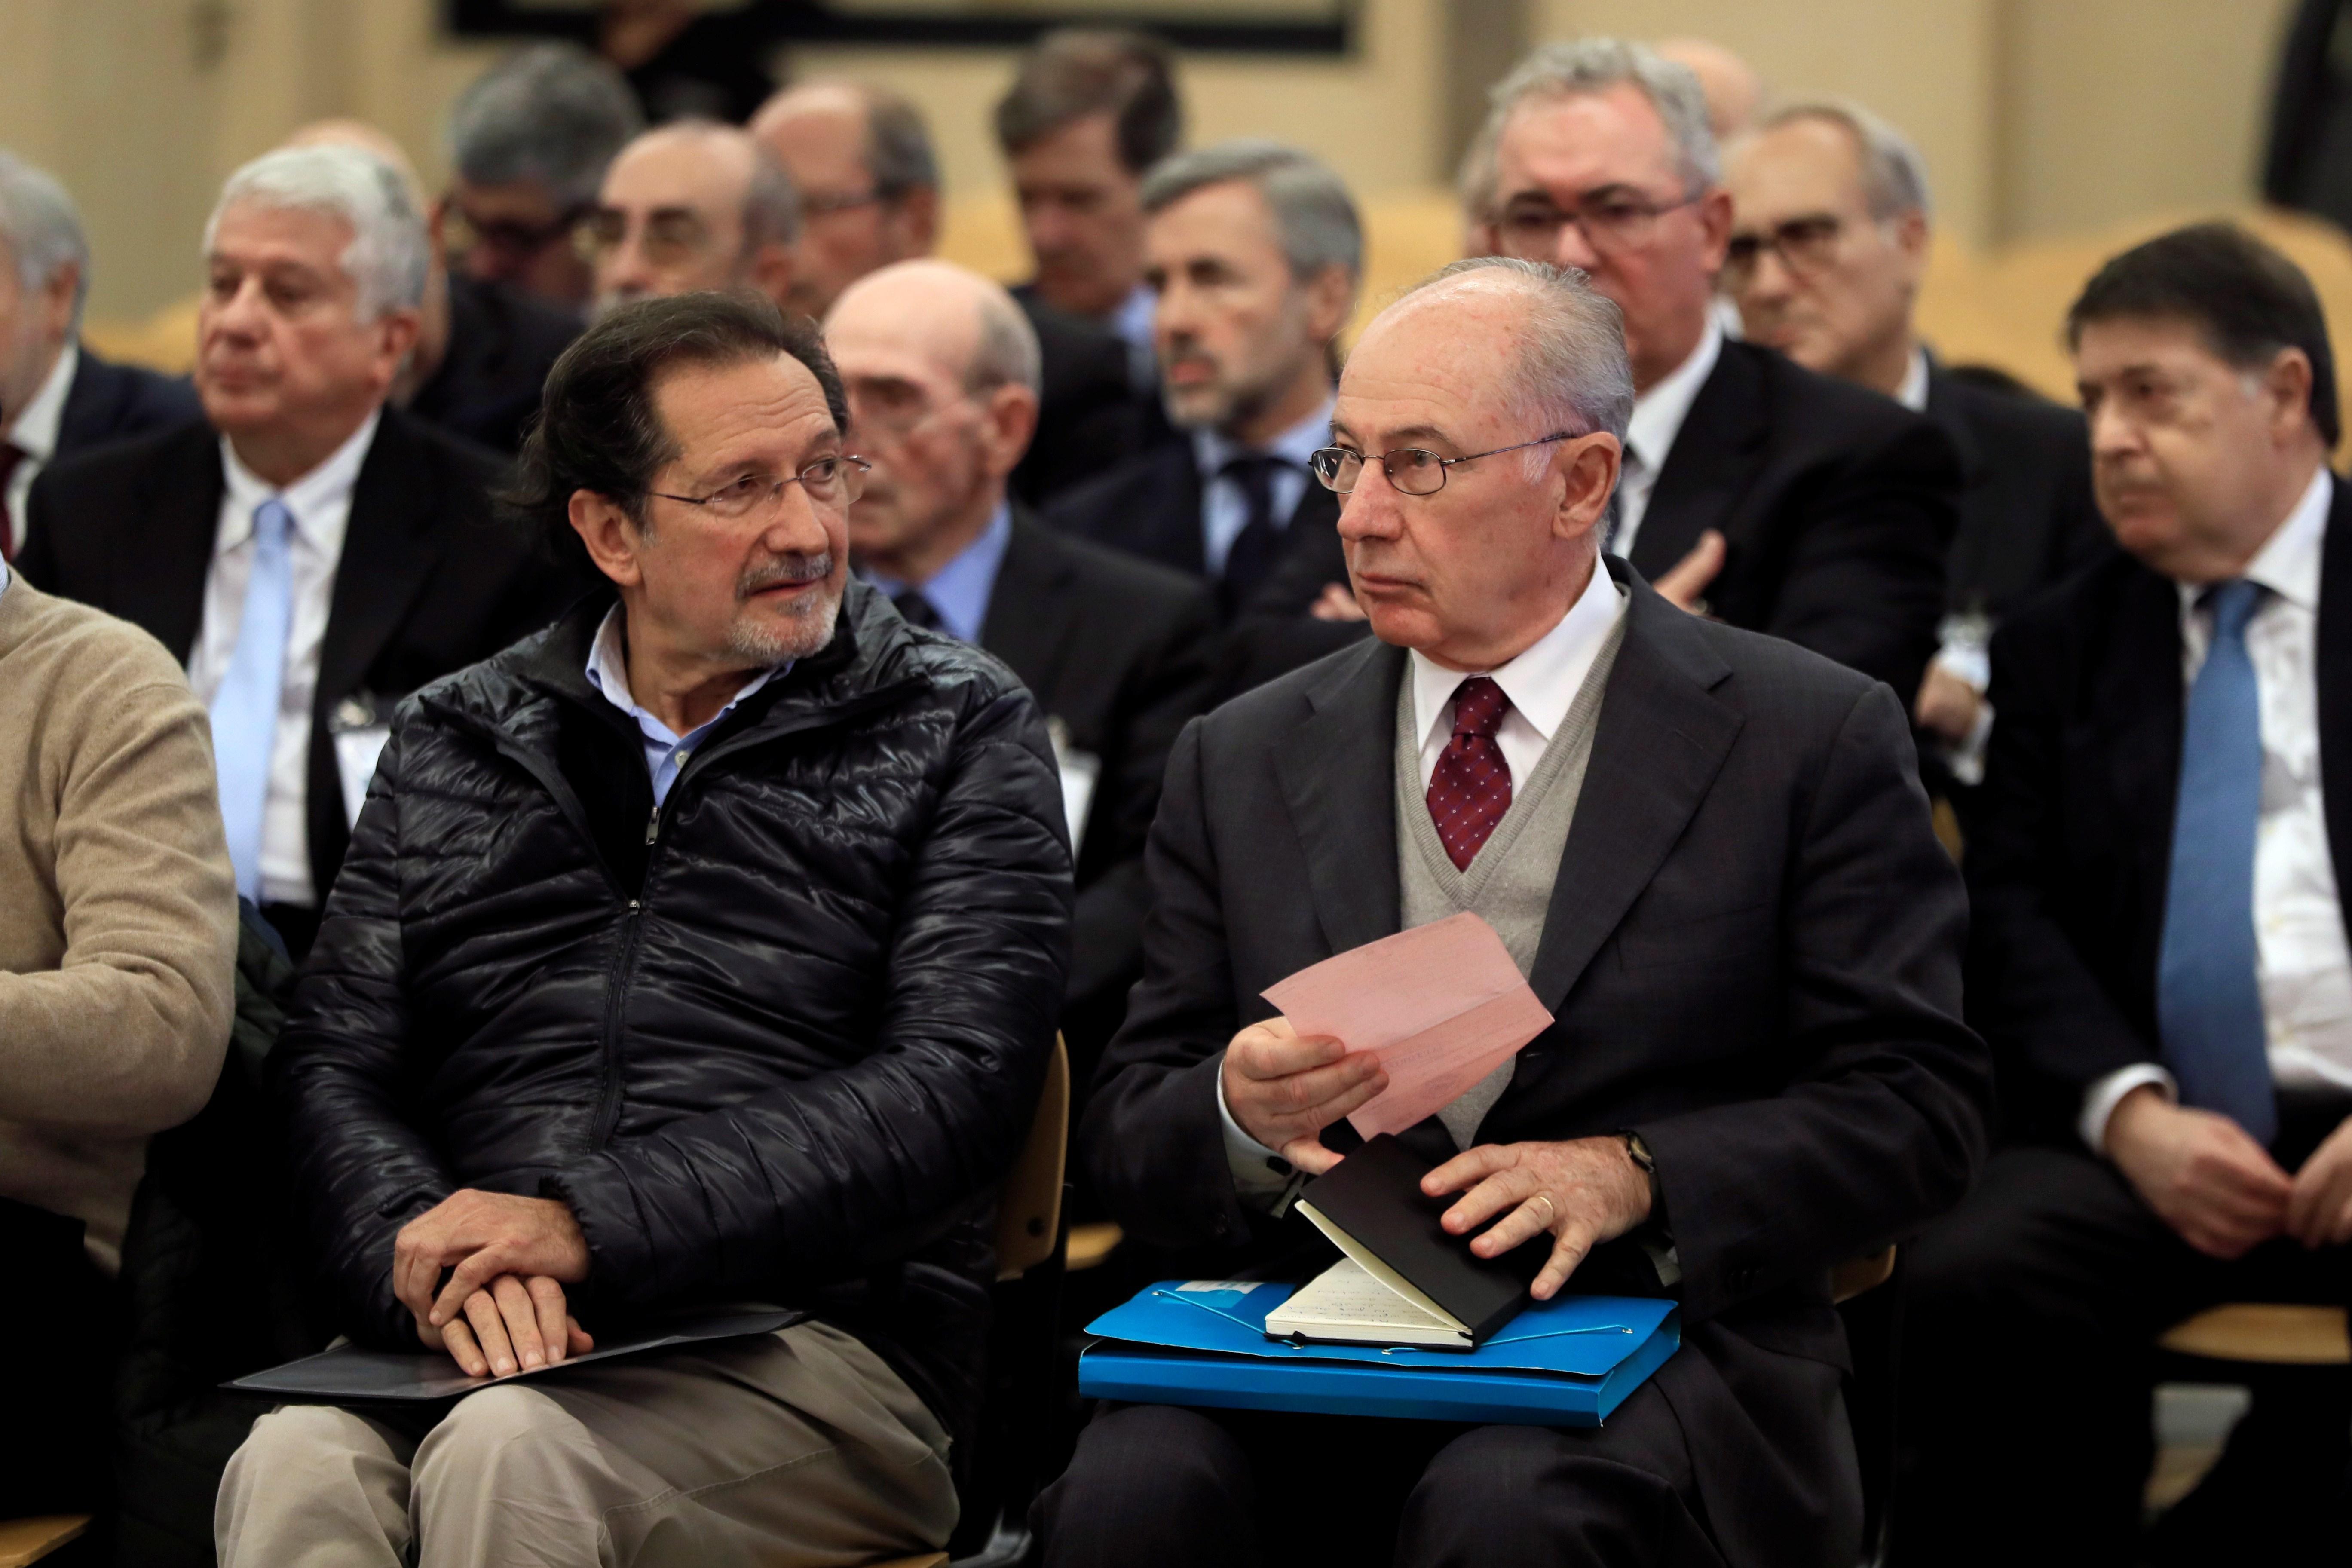 El exconsejero de Caja Madrid José Antonio Moral Santín (al lado de Rato a la izquierda de la imagen) durante la primera sesión del juicio - Archivo